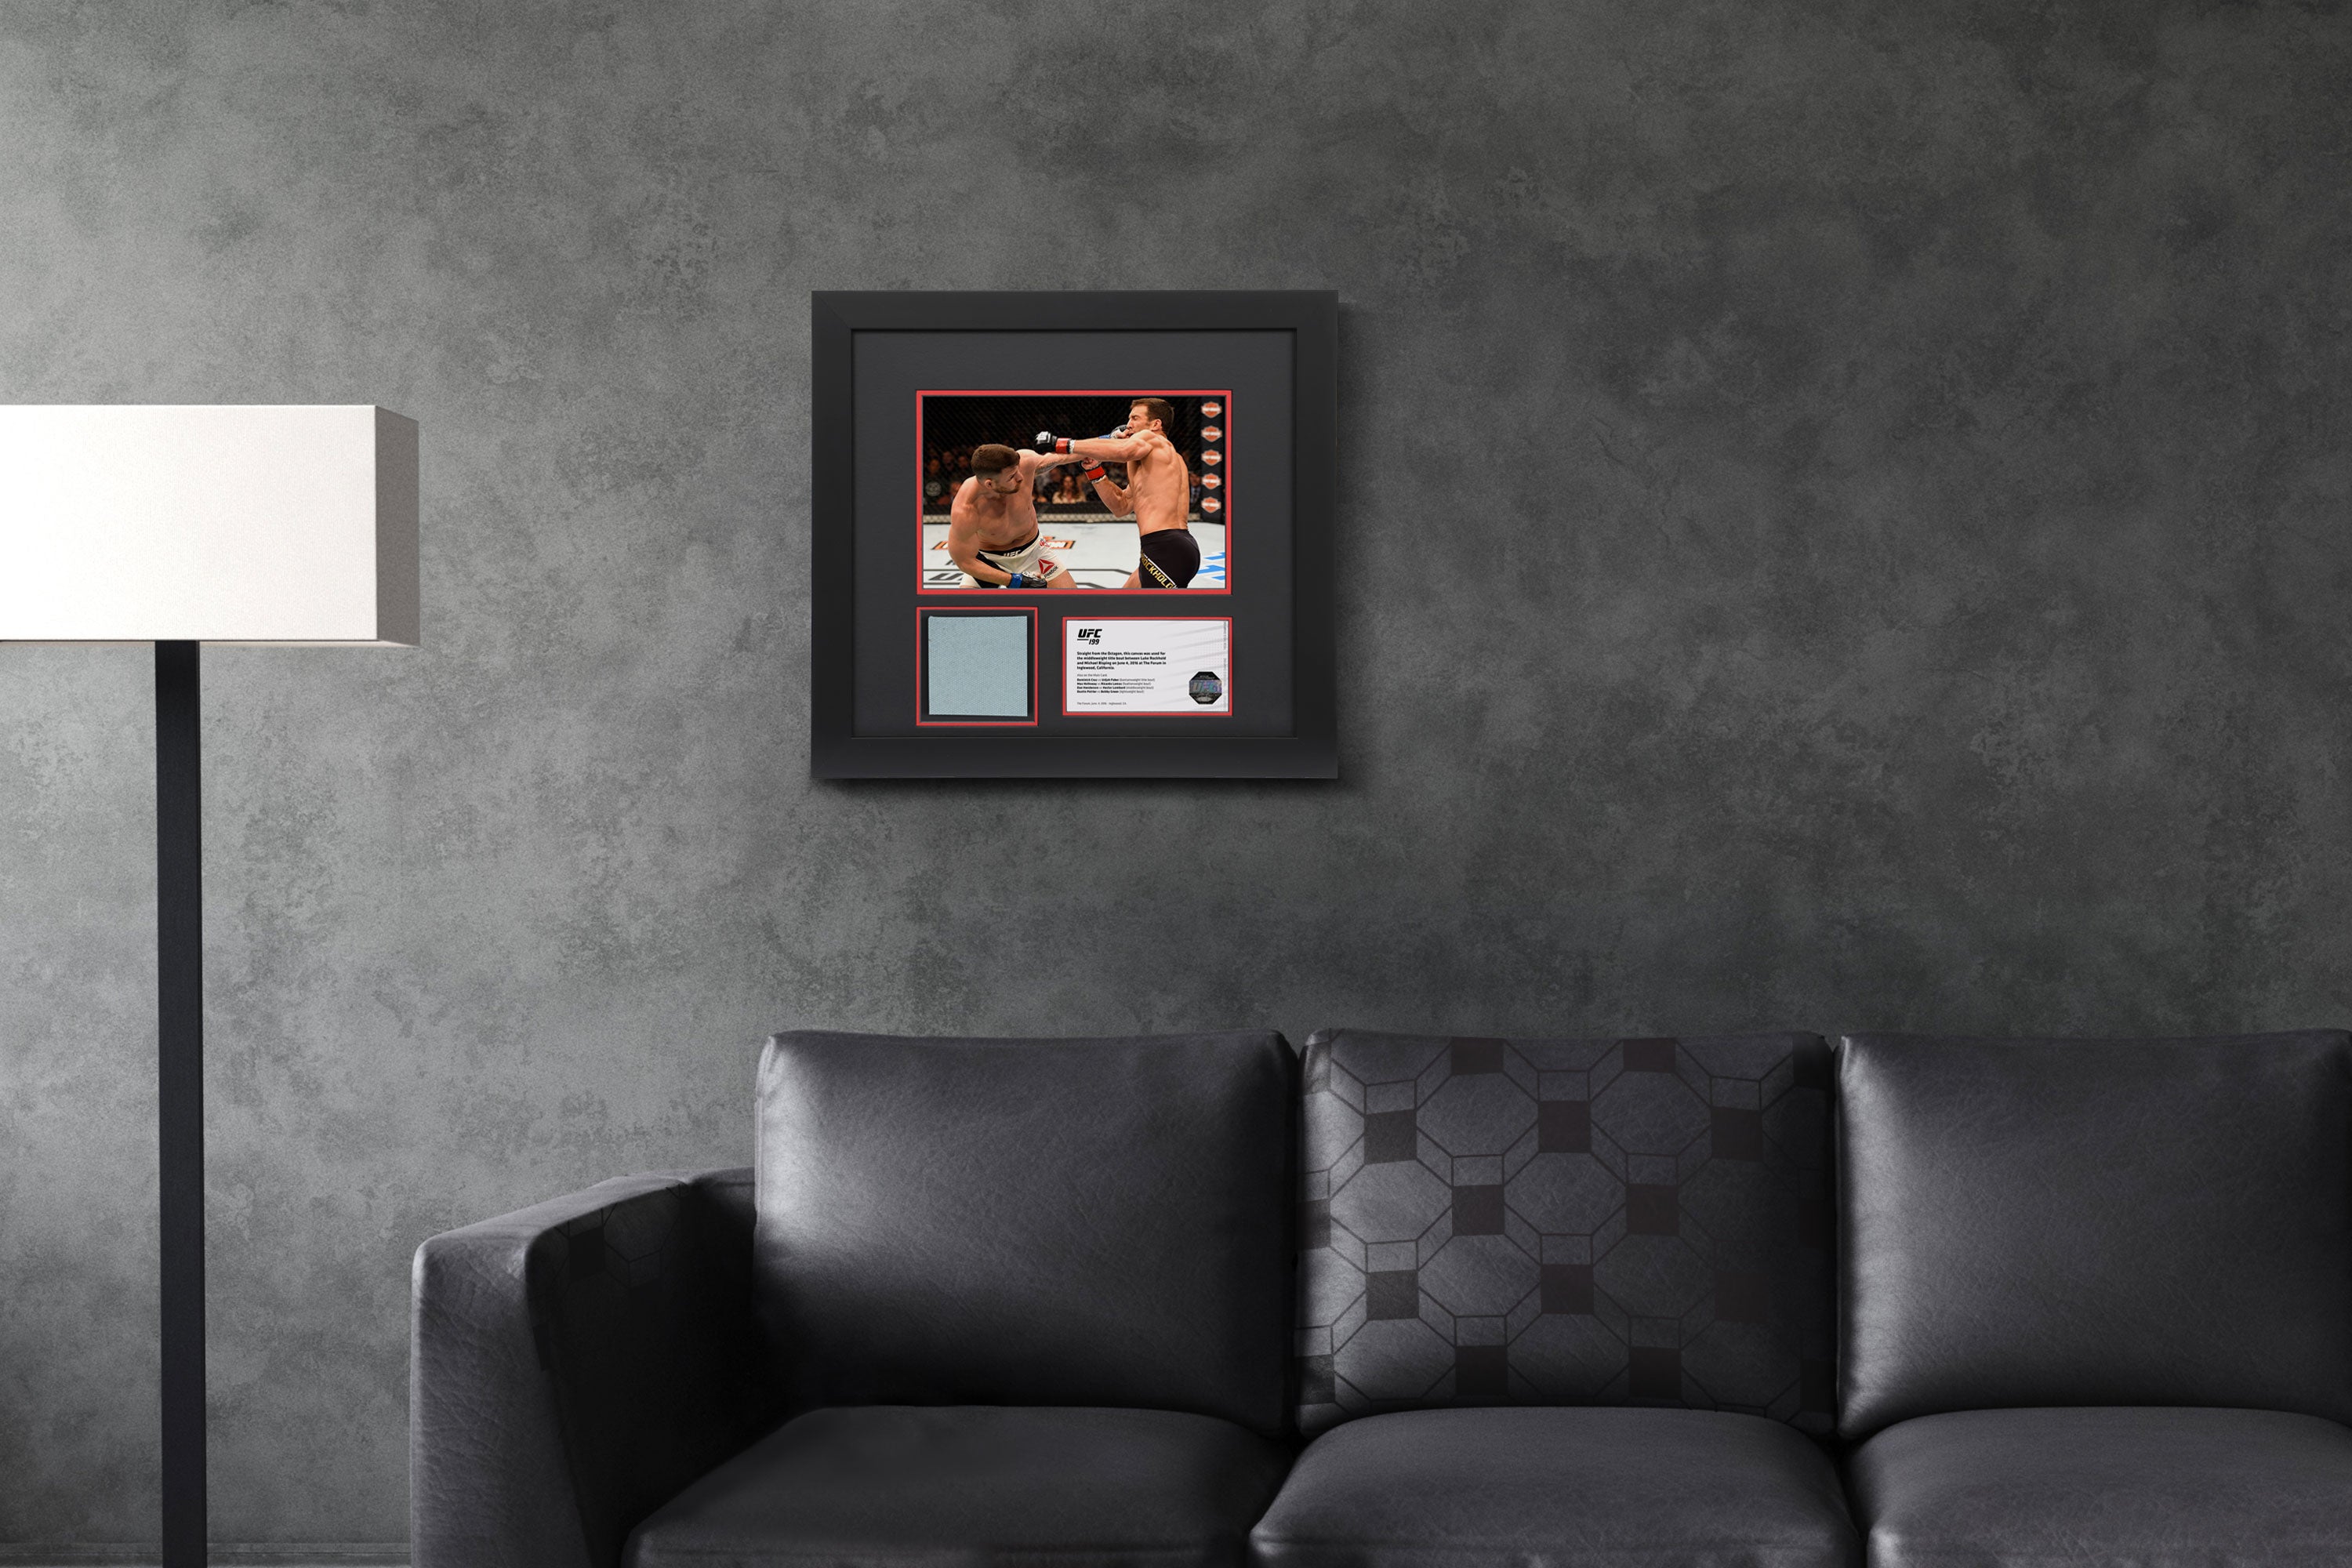 UFC 199: Rockhold vs Bisping 2 Canvas & Photo - Rockhold vs Bisping